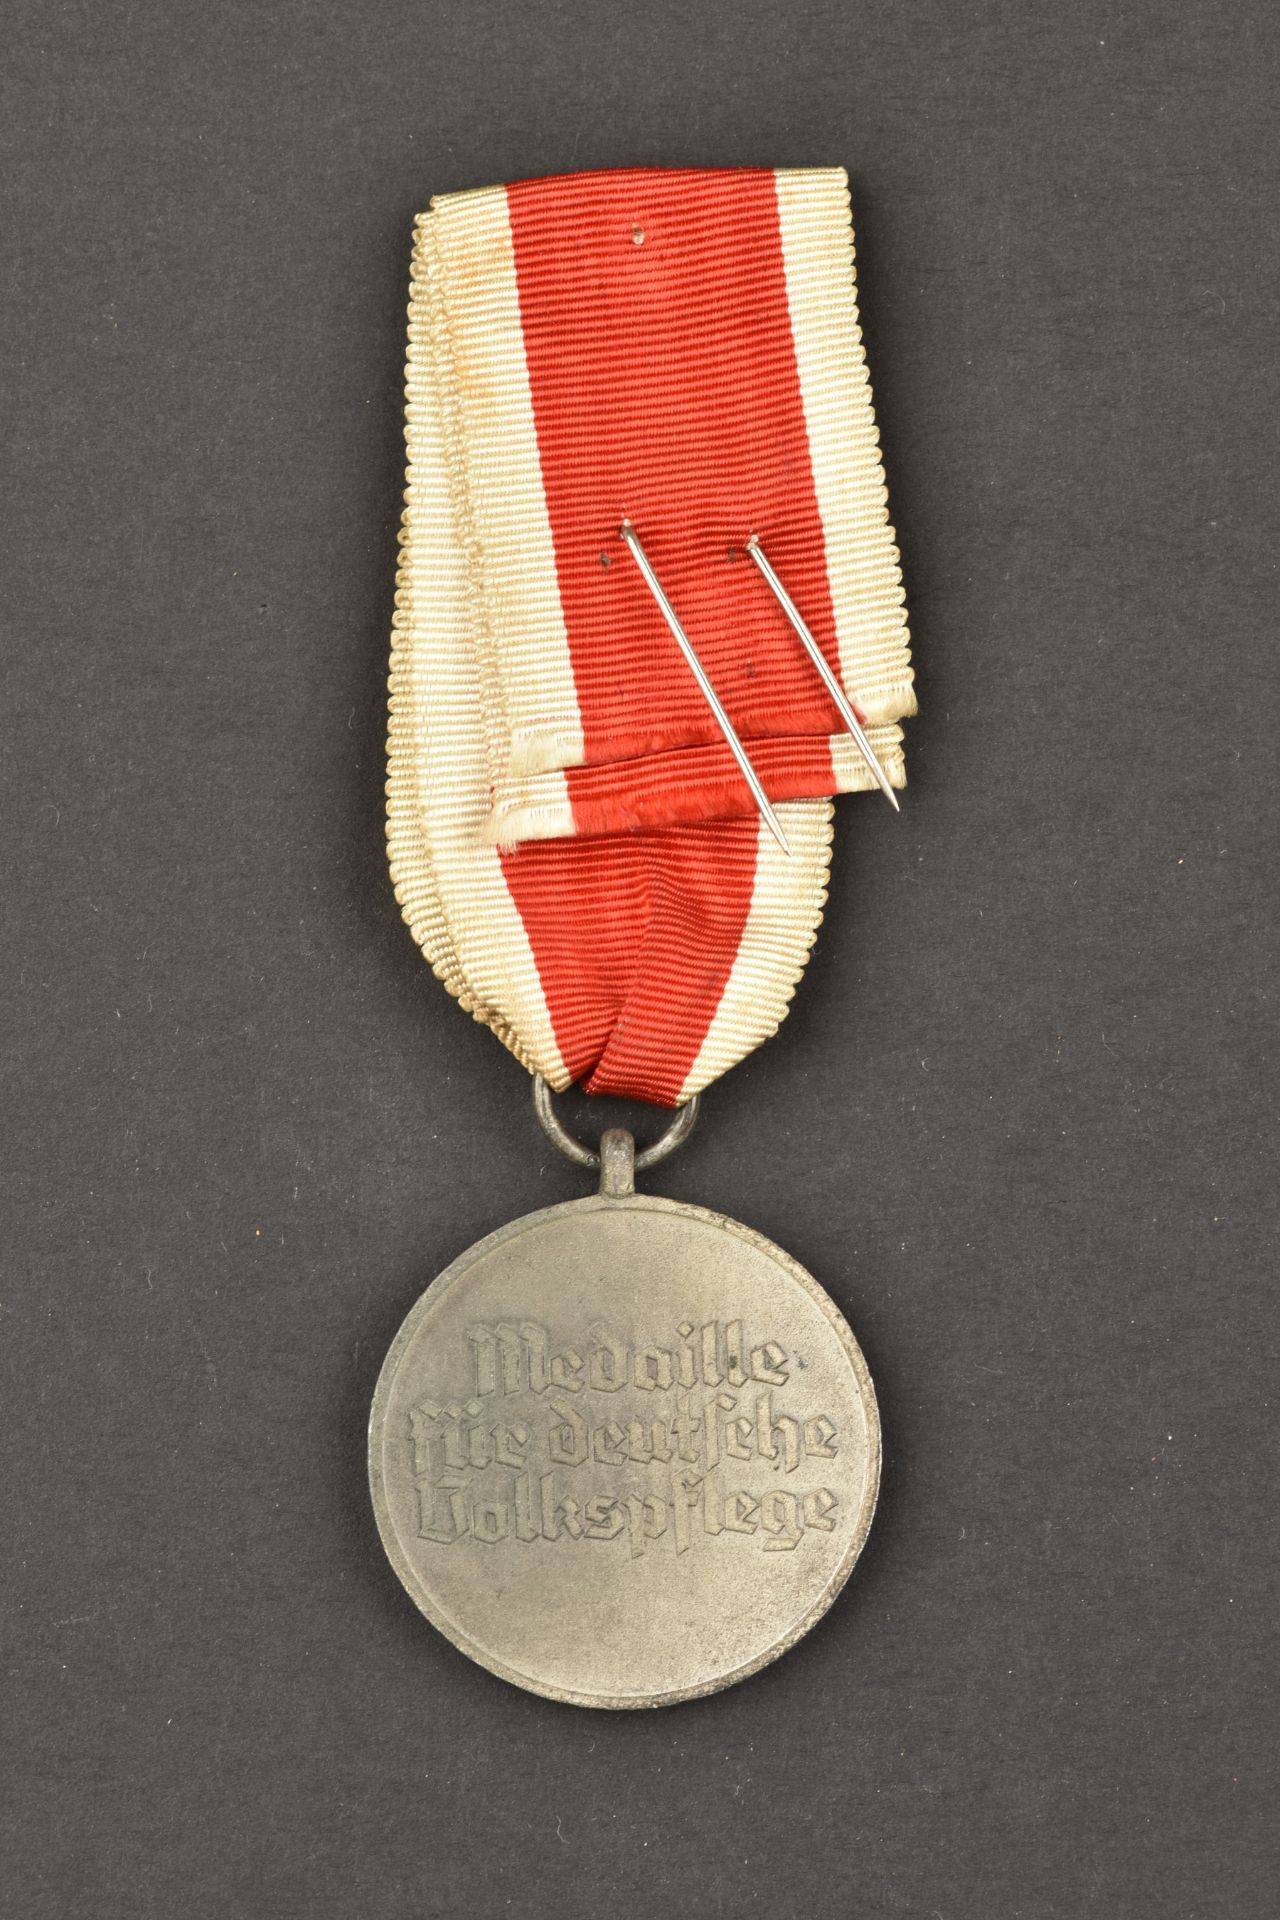 MŽdaille DRK. DRK medal. - Image 2 of 2